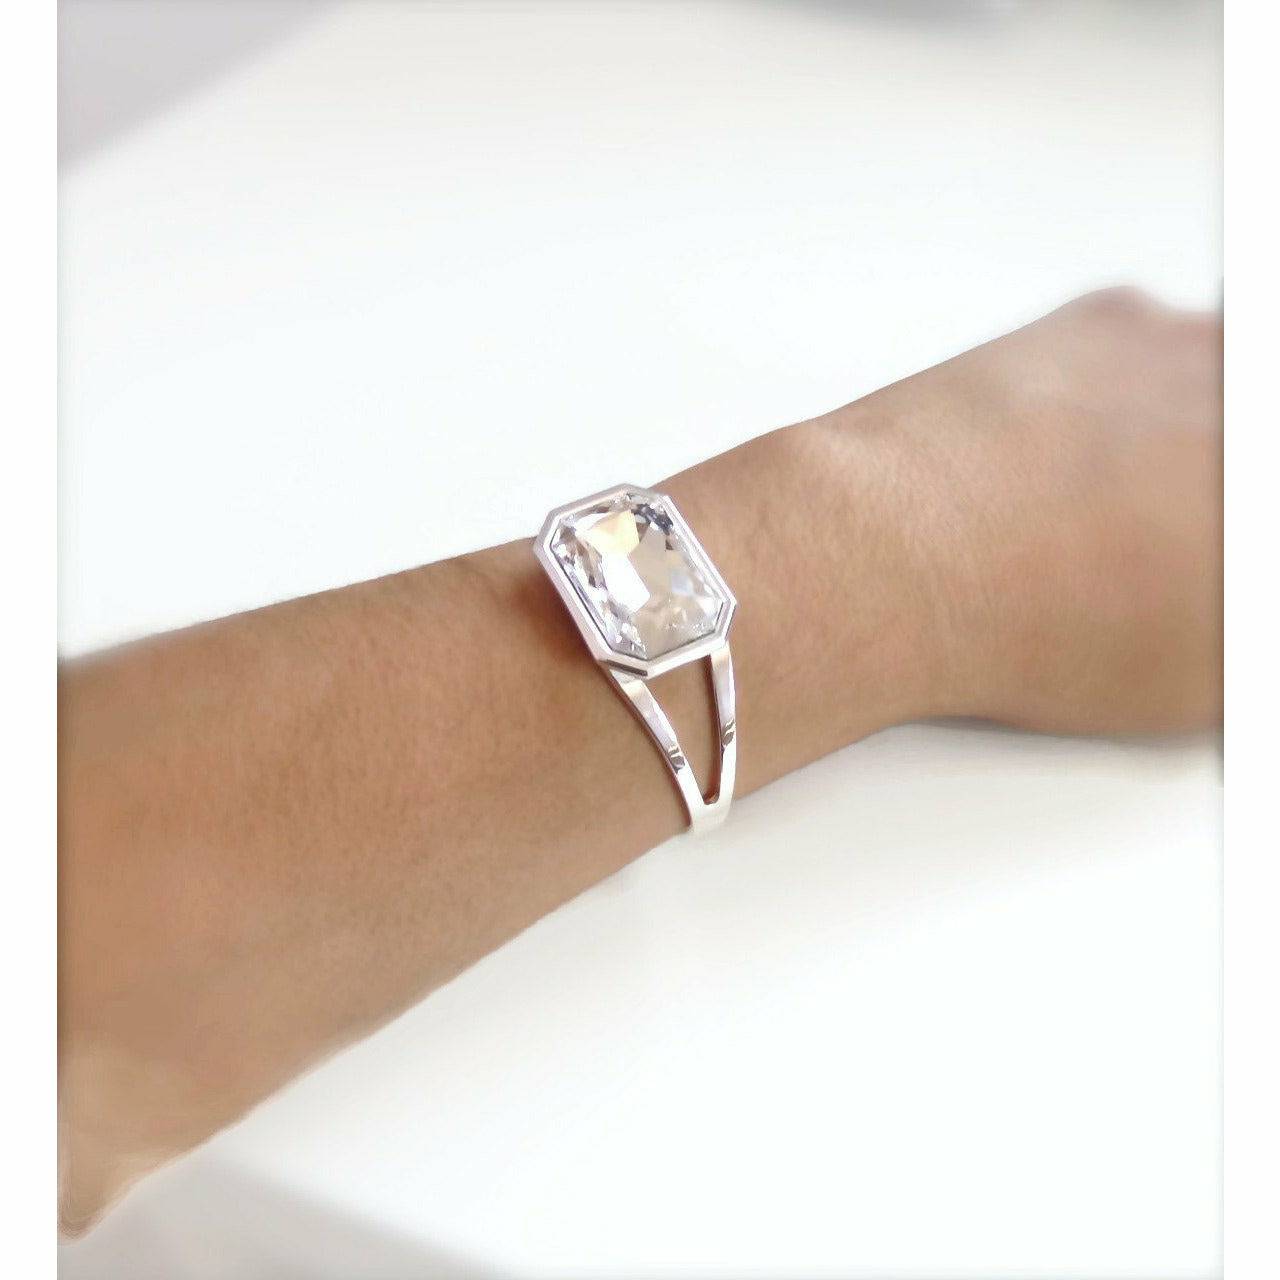 Clear crystal cuff bracelet